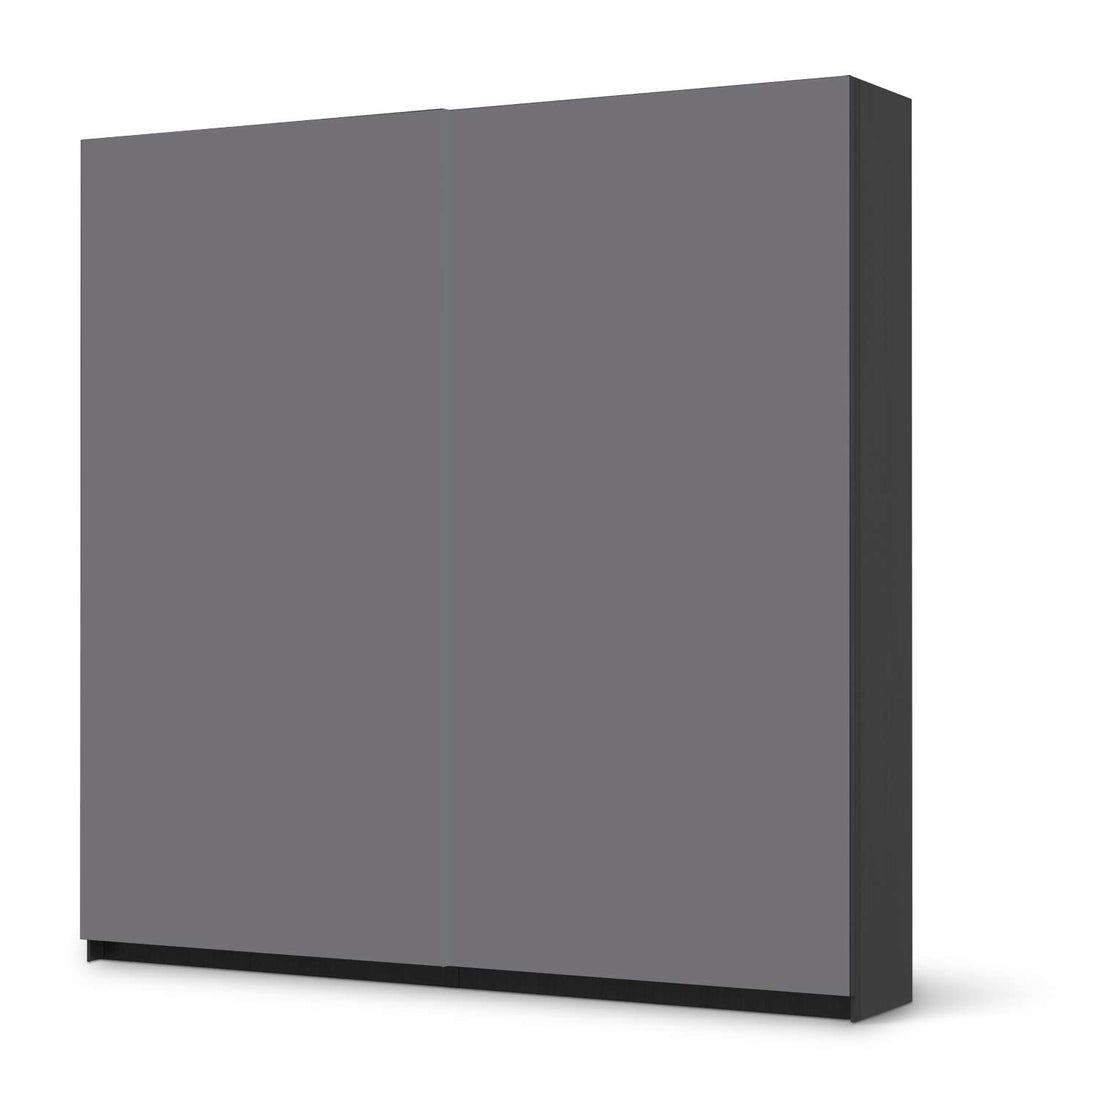 Möbel Klebefolie Grau Light - IKEA Pax Schrank 201 cm Höhe - Schiebetür - schwarz